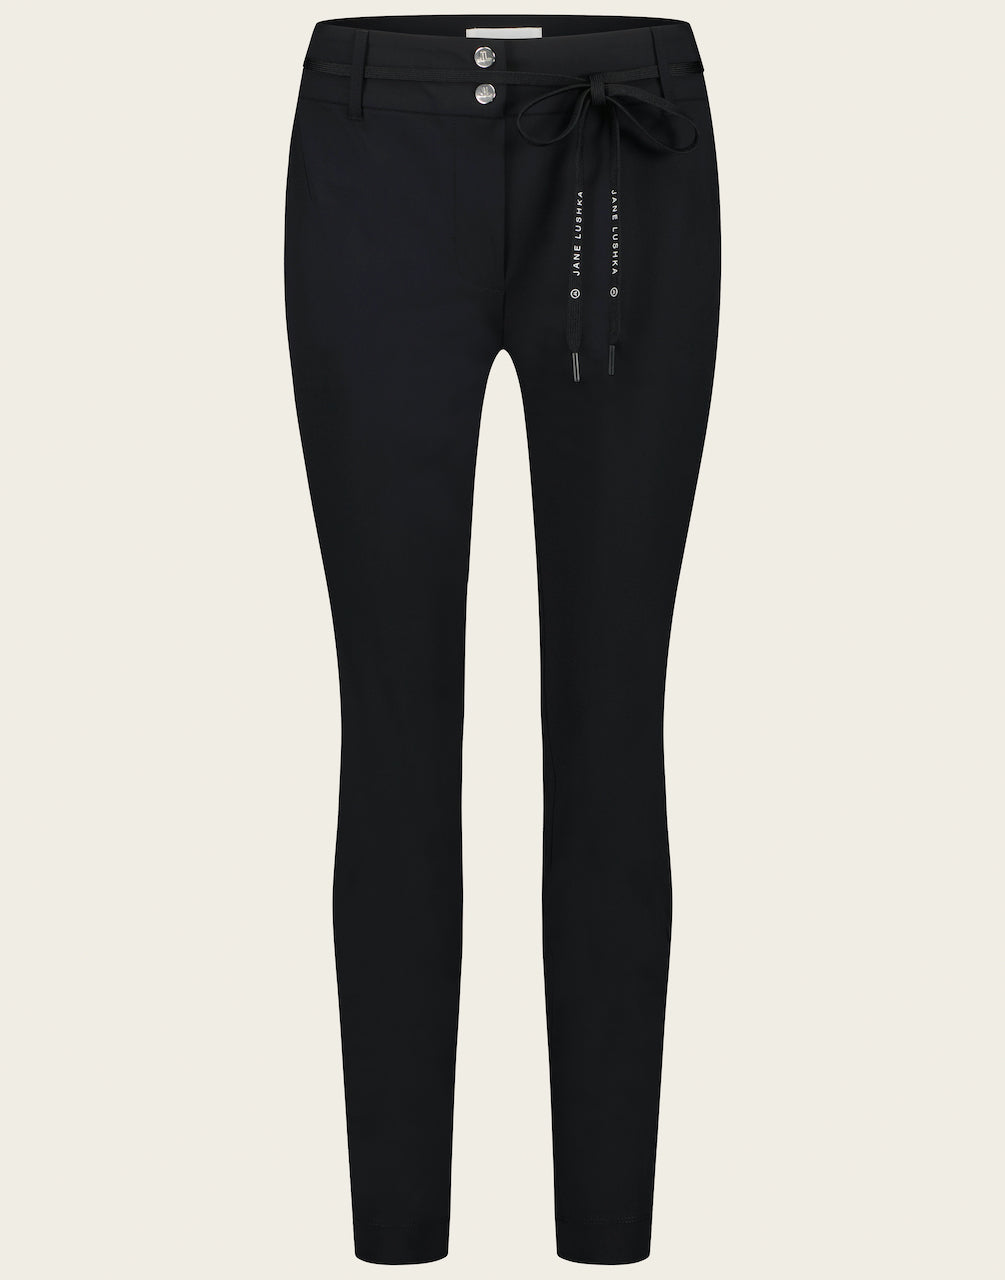 Zwarte Broek Dalas is een mooie tijdloze broek uit de collectie van Jane Lushka. Deze broek heeft een nauwsluitende fit, een smalle en kortere pijp, met een veter van Jane Lushka als ceintuur. Broek Dalas is verkrijgbaar in verschillende kleuren: Black en Jeans.